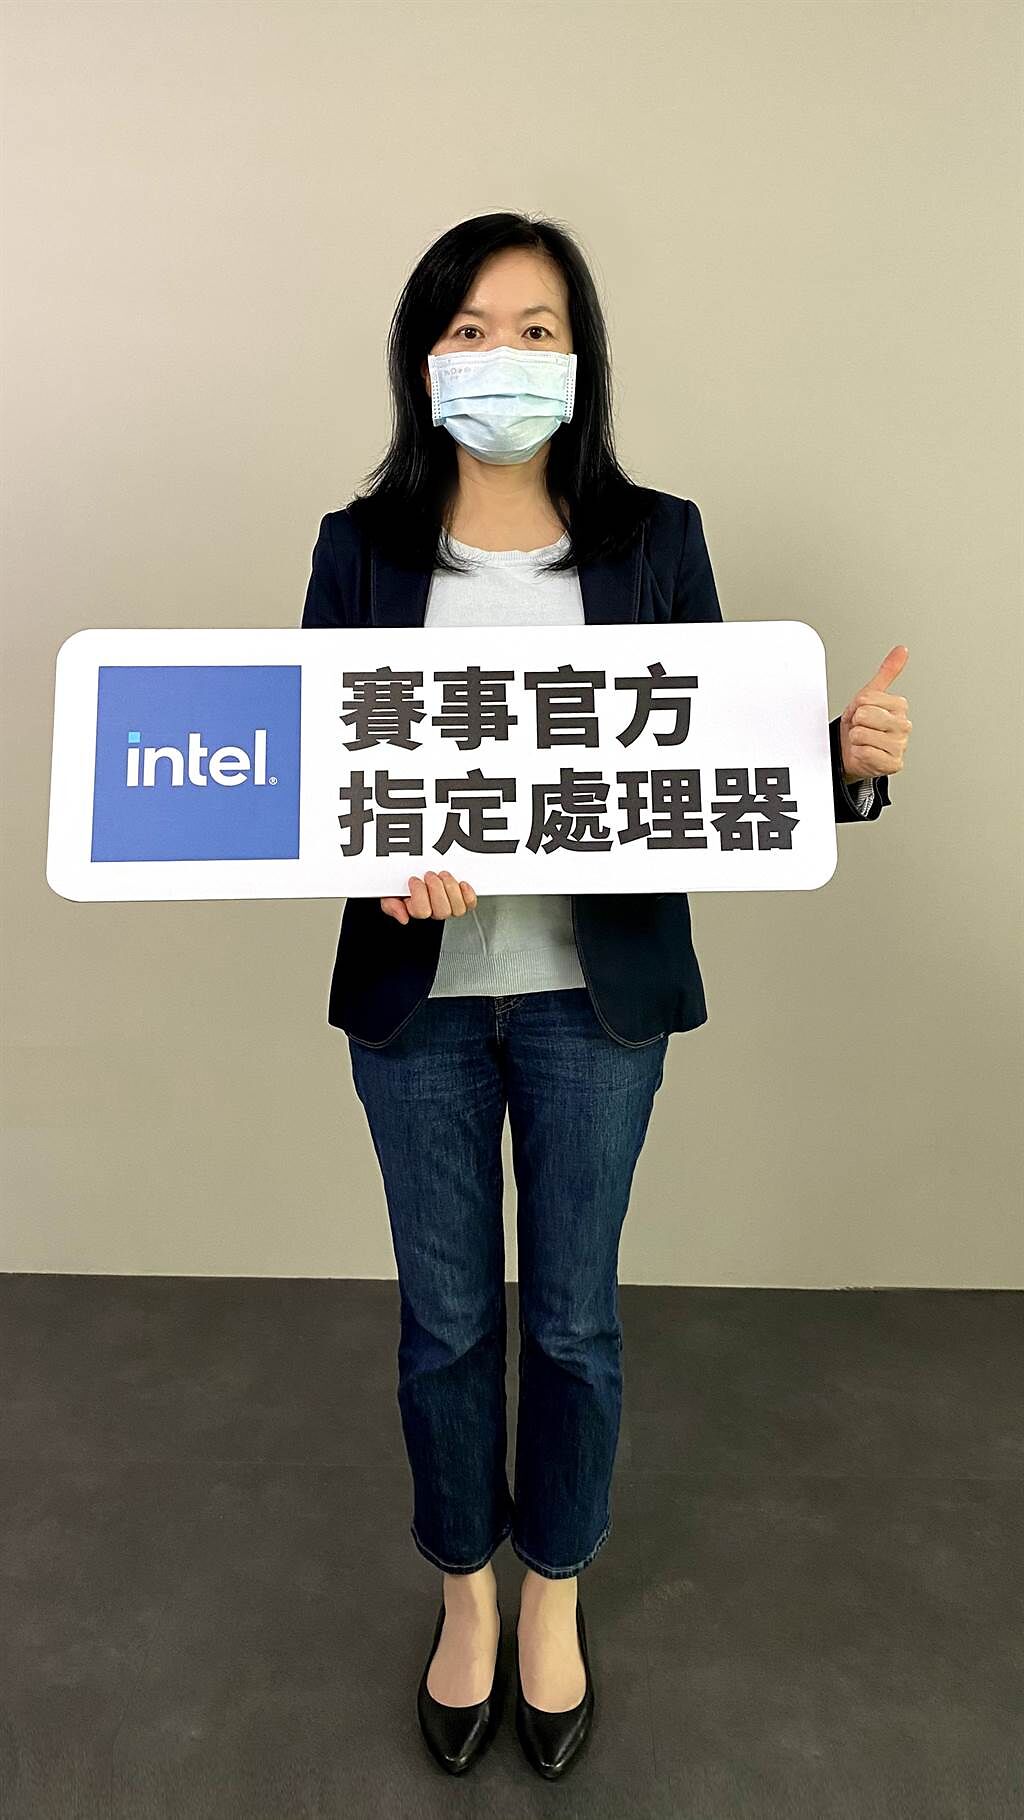 專為電腦玩家打造無與倫比遊戲體驗的賽事指定處理器Intel大力支持本屆賽事，Intel台灣分公司行銷總監 裘佳敏出席開賽記者會